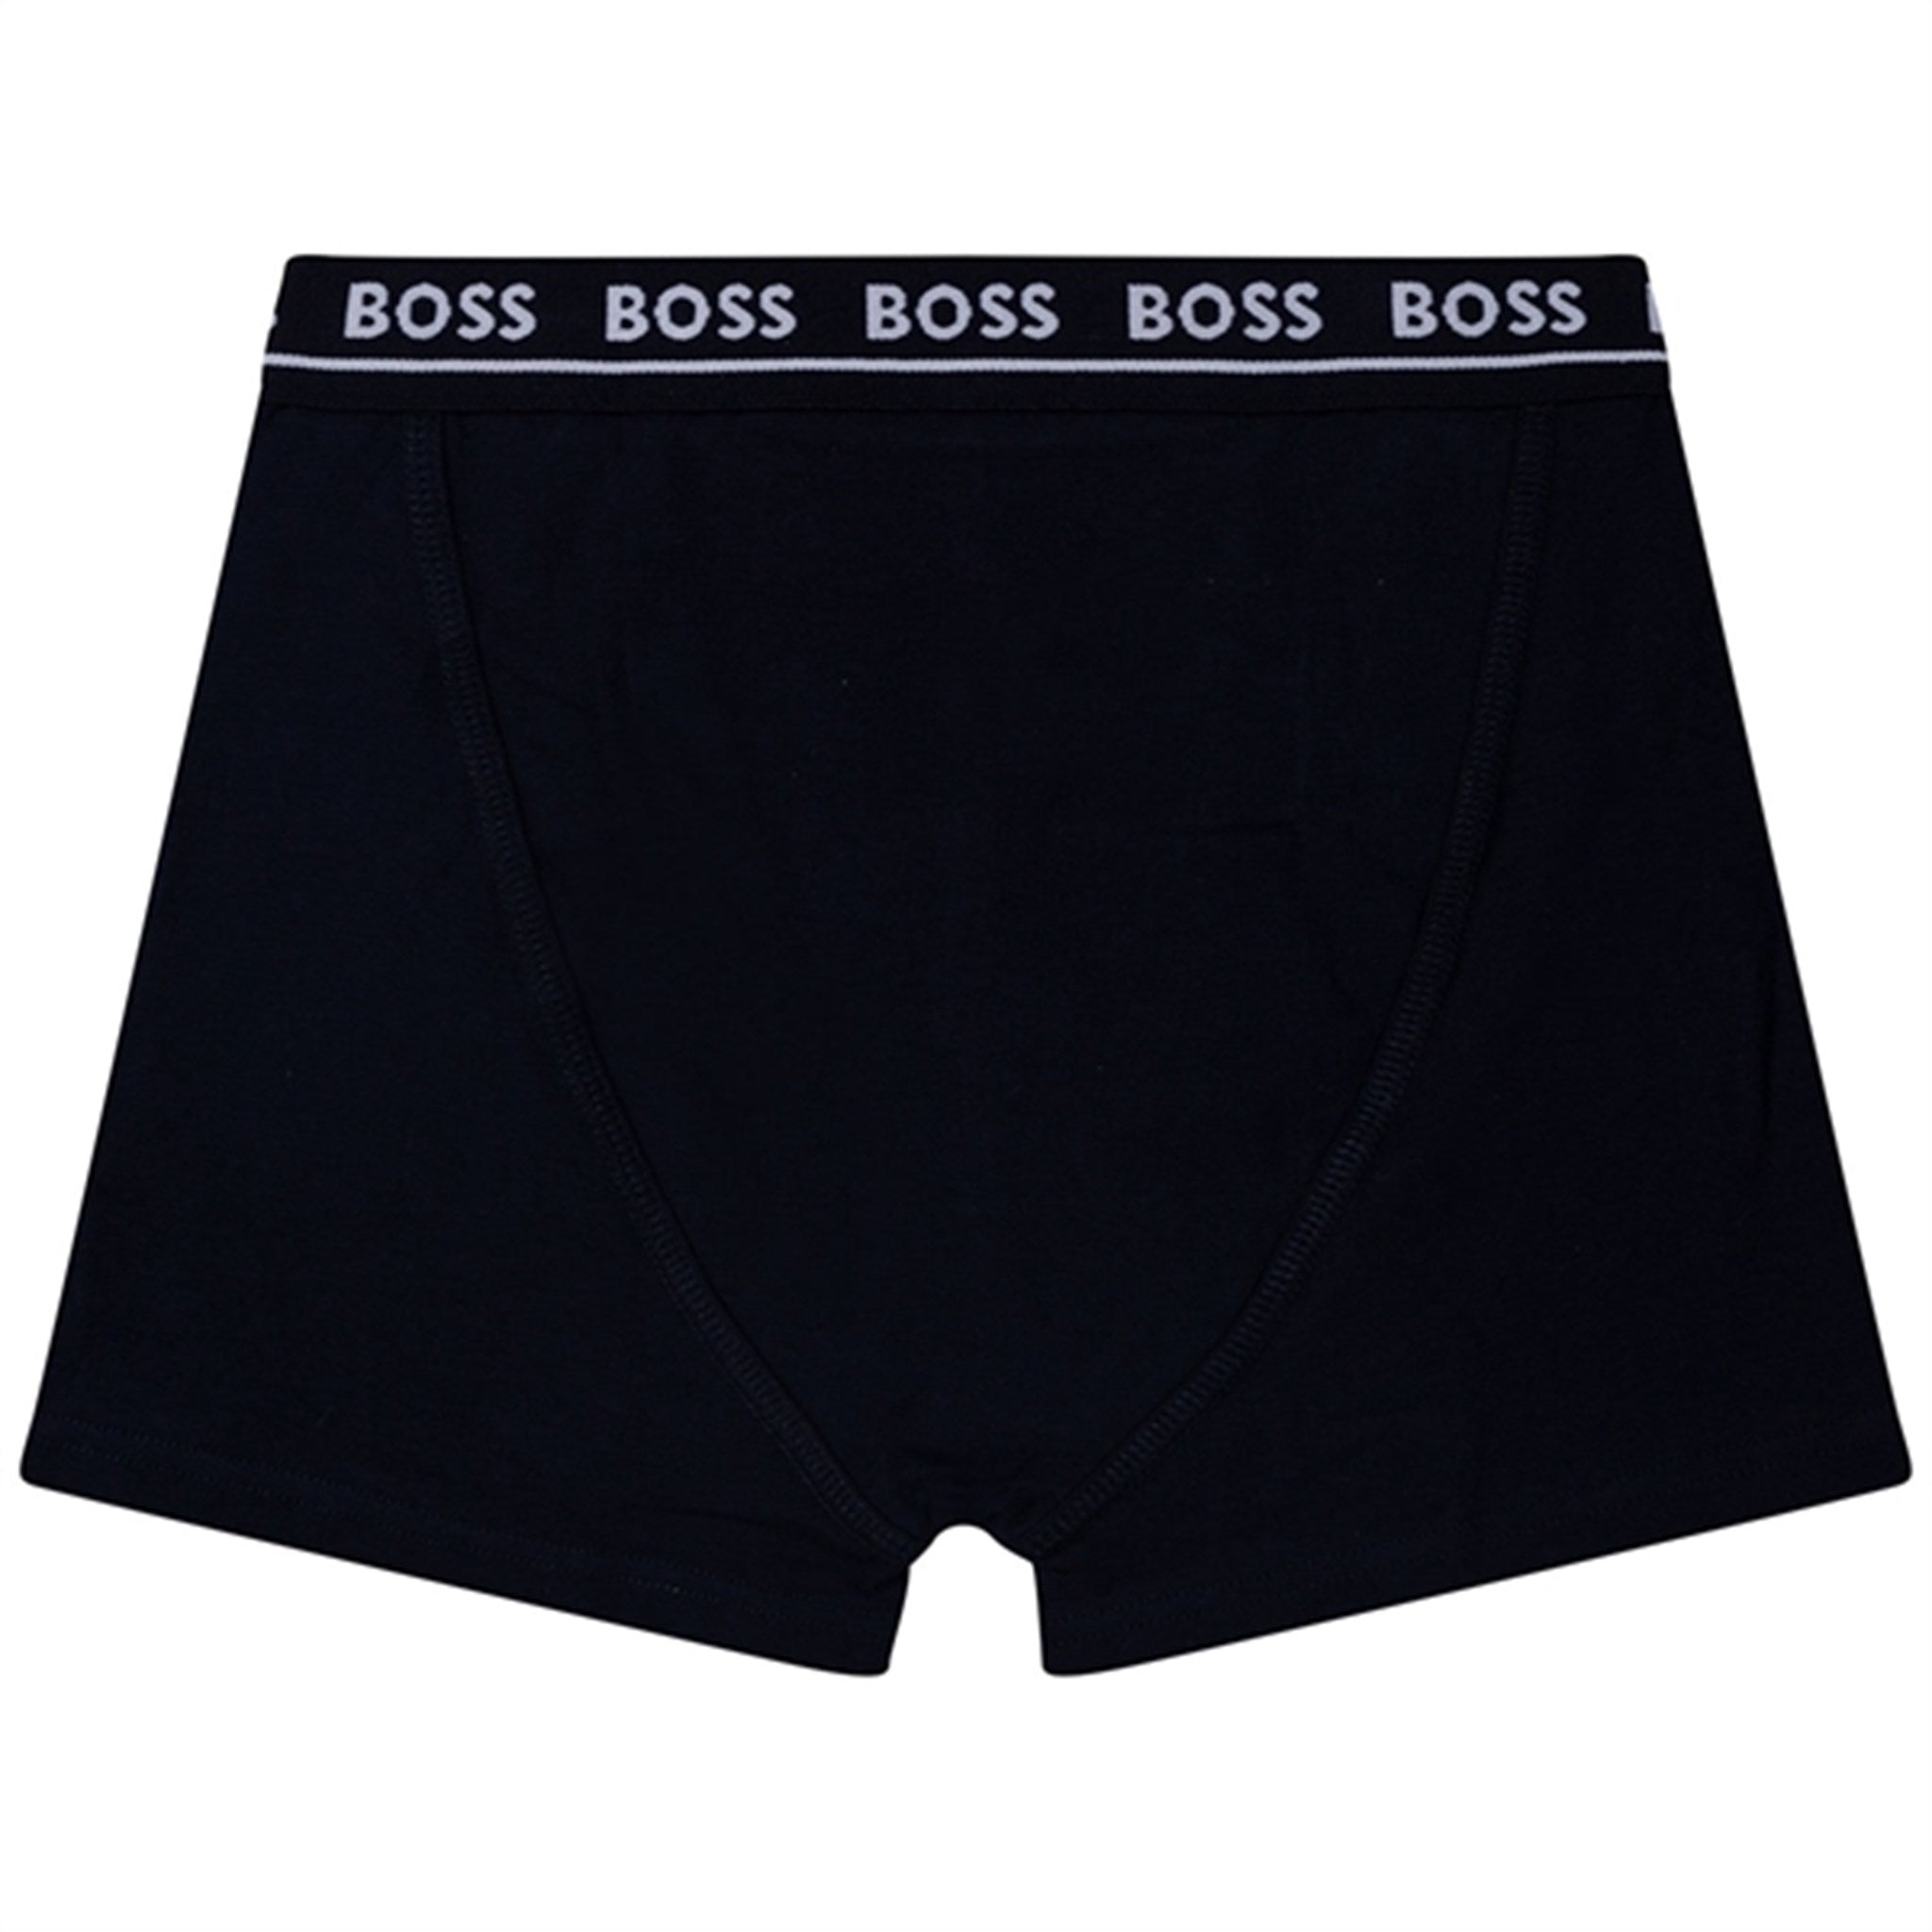 Hugo Boss Boxer Shorts 2-pack Black 6